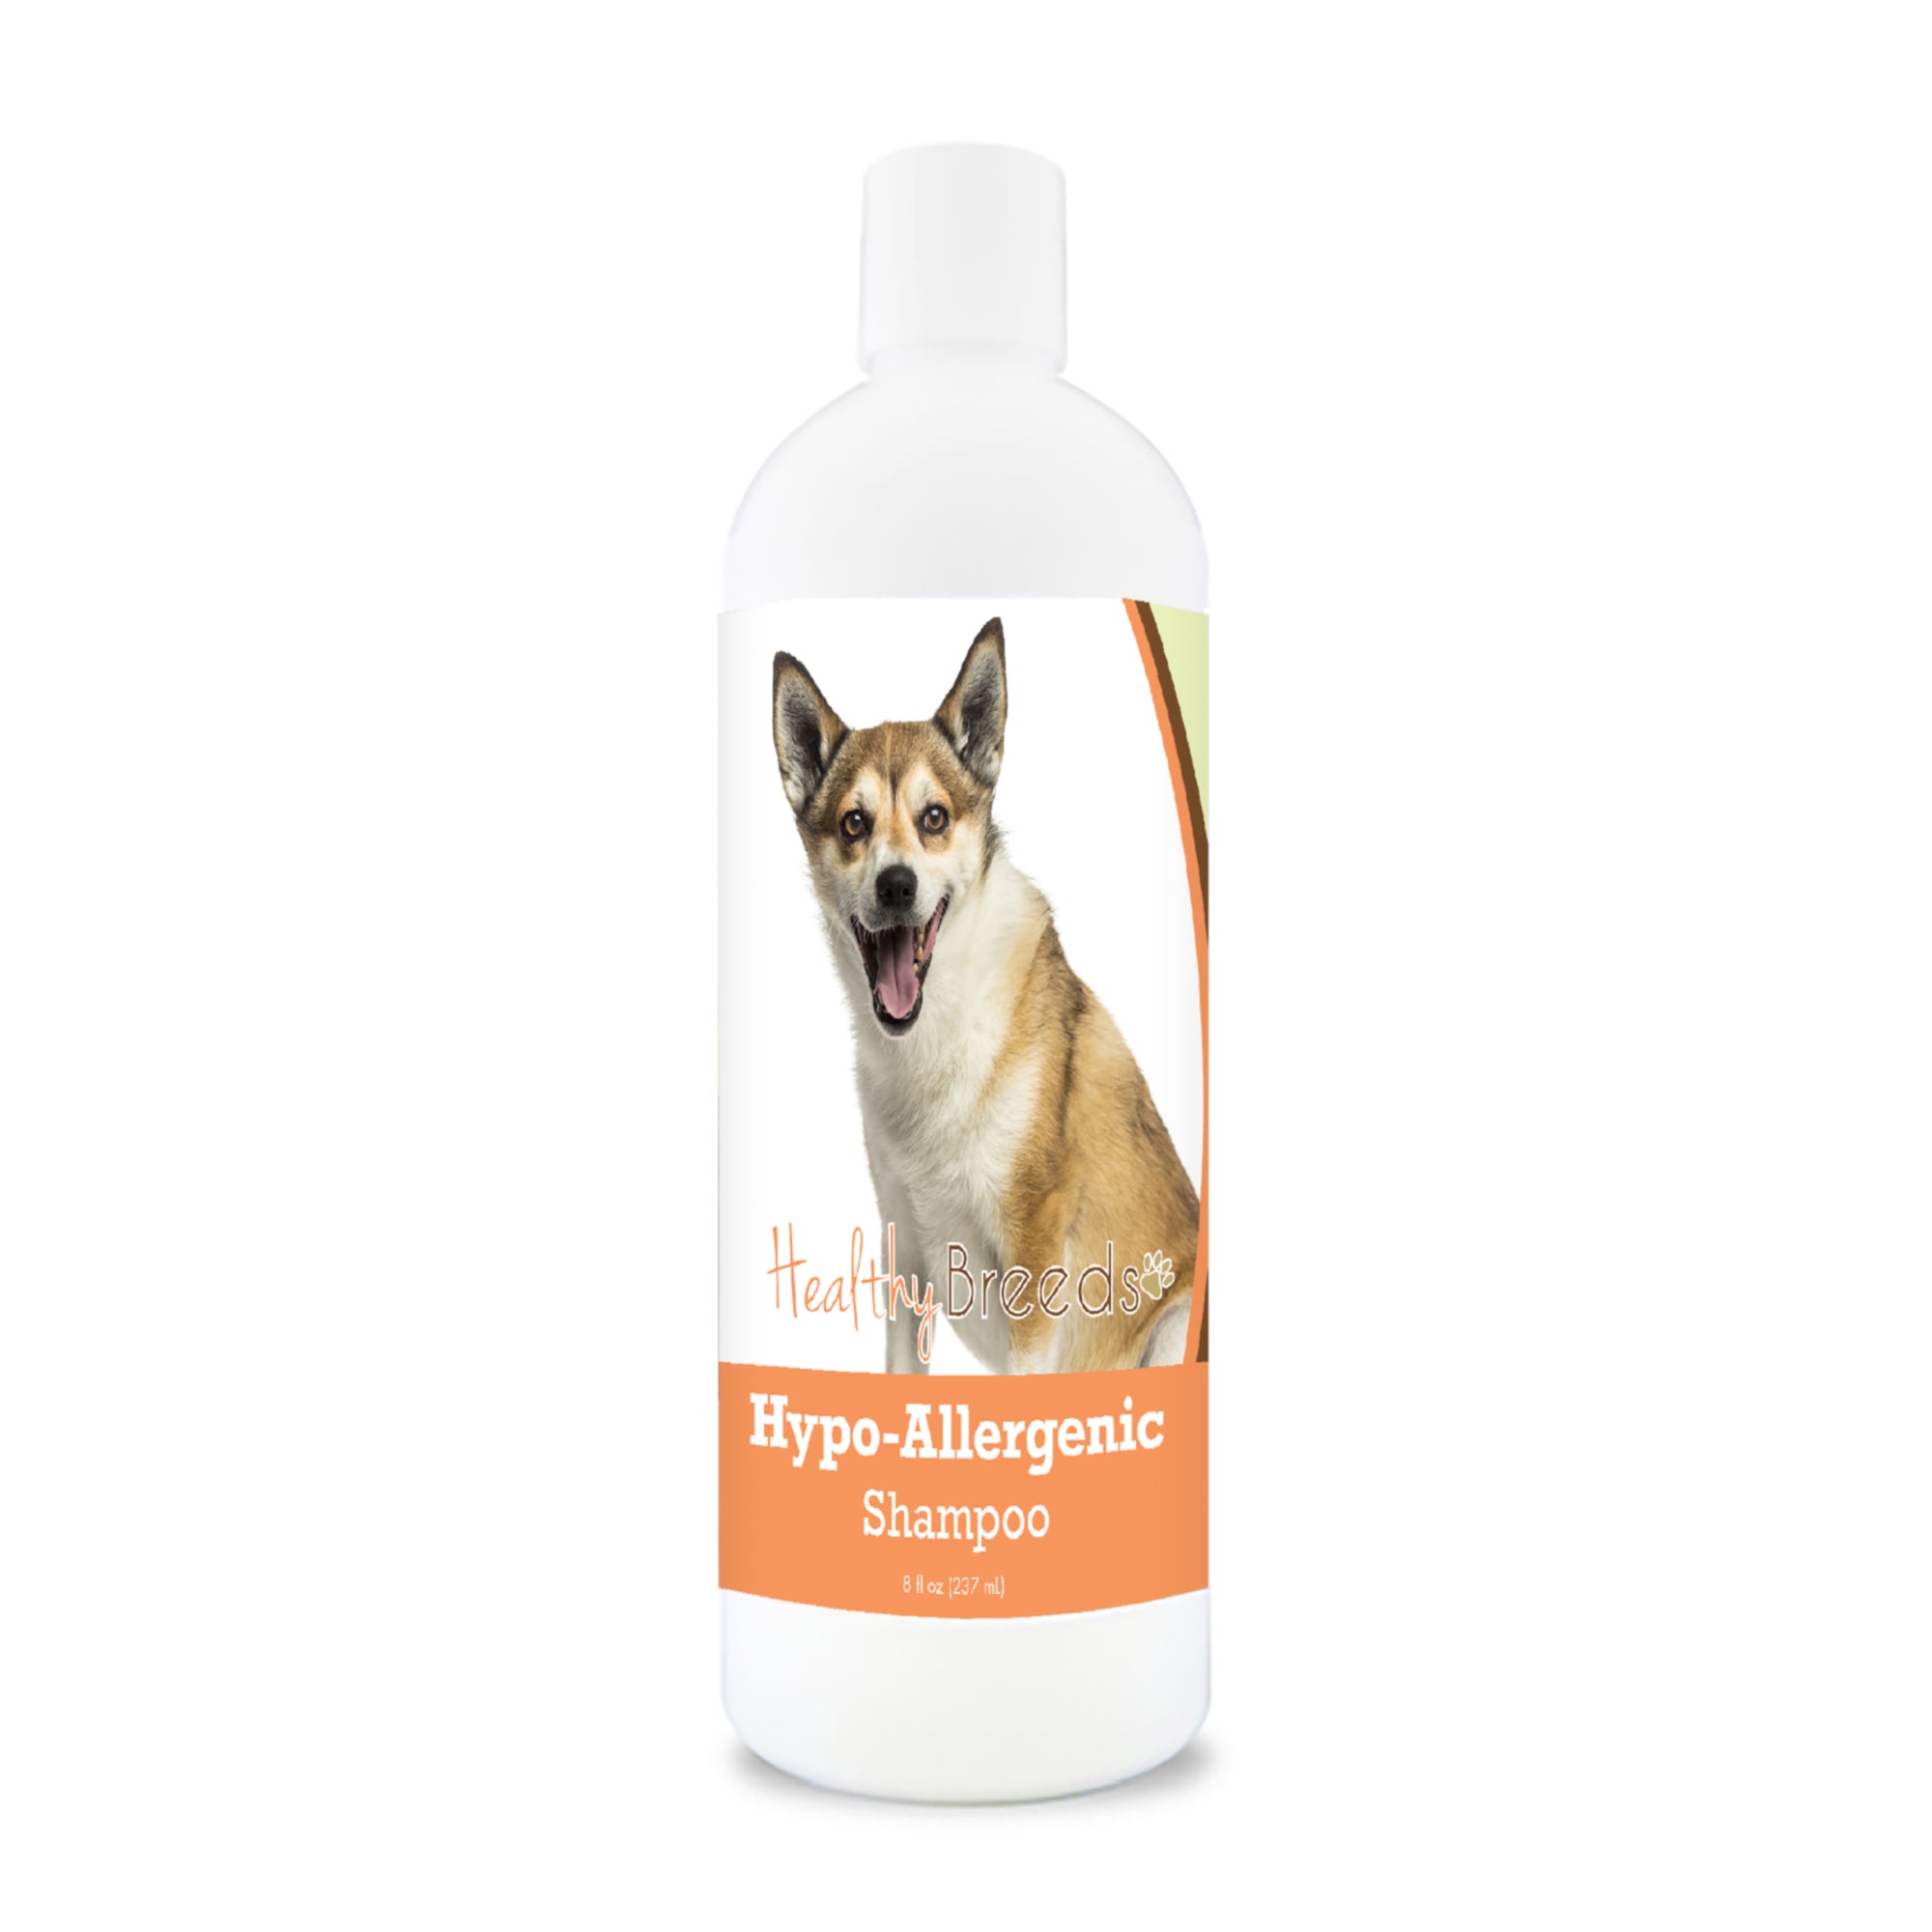 Norwegian Lundehund Hypo-Allergenic Shampoo 8 oz